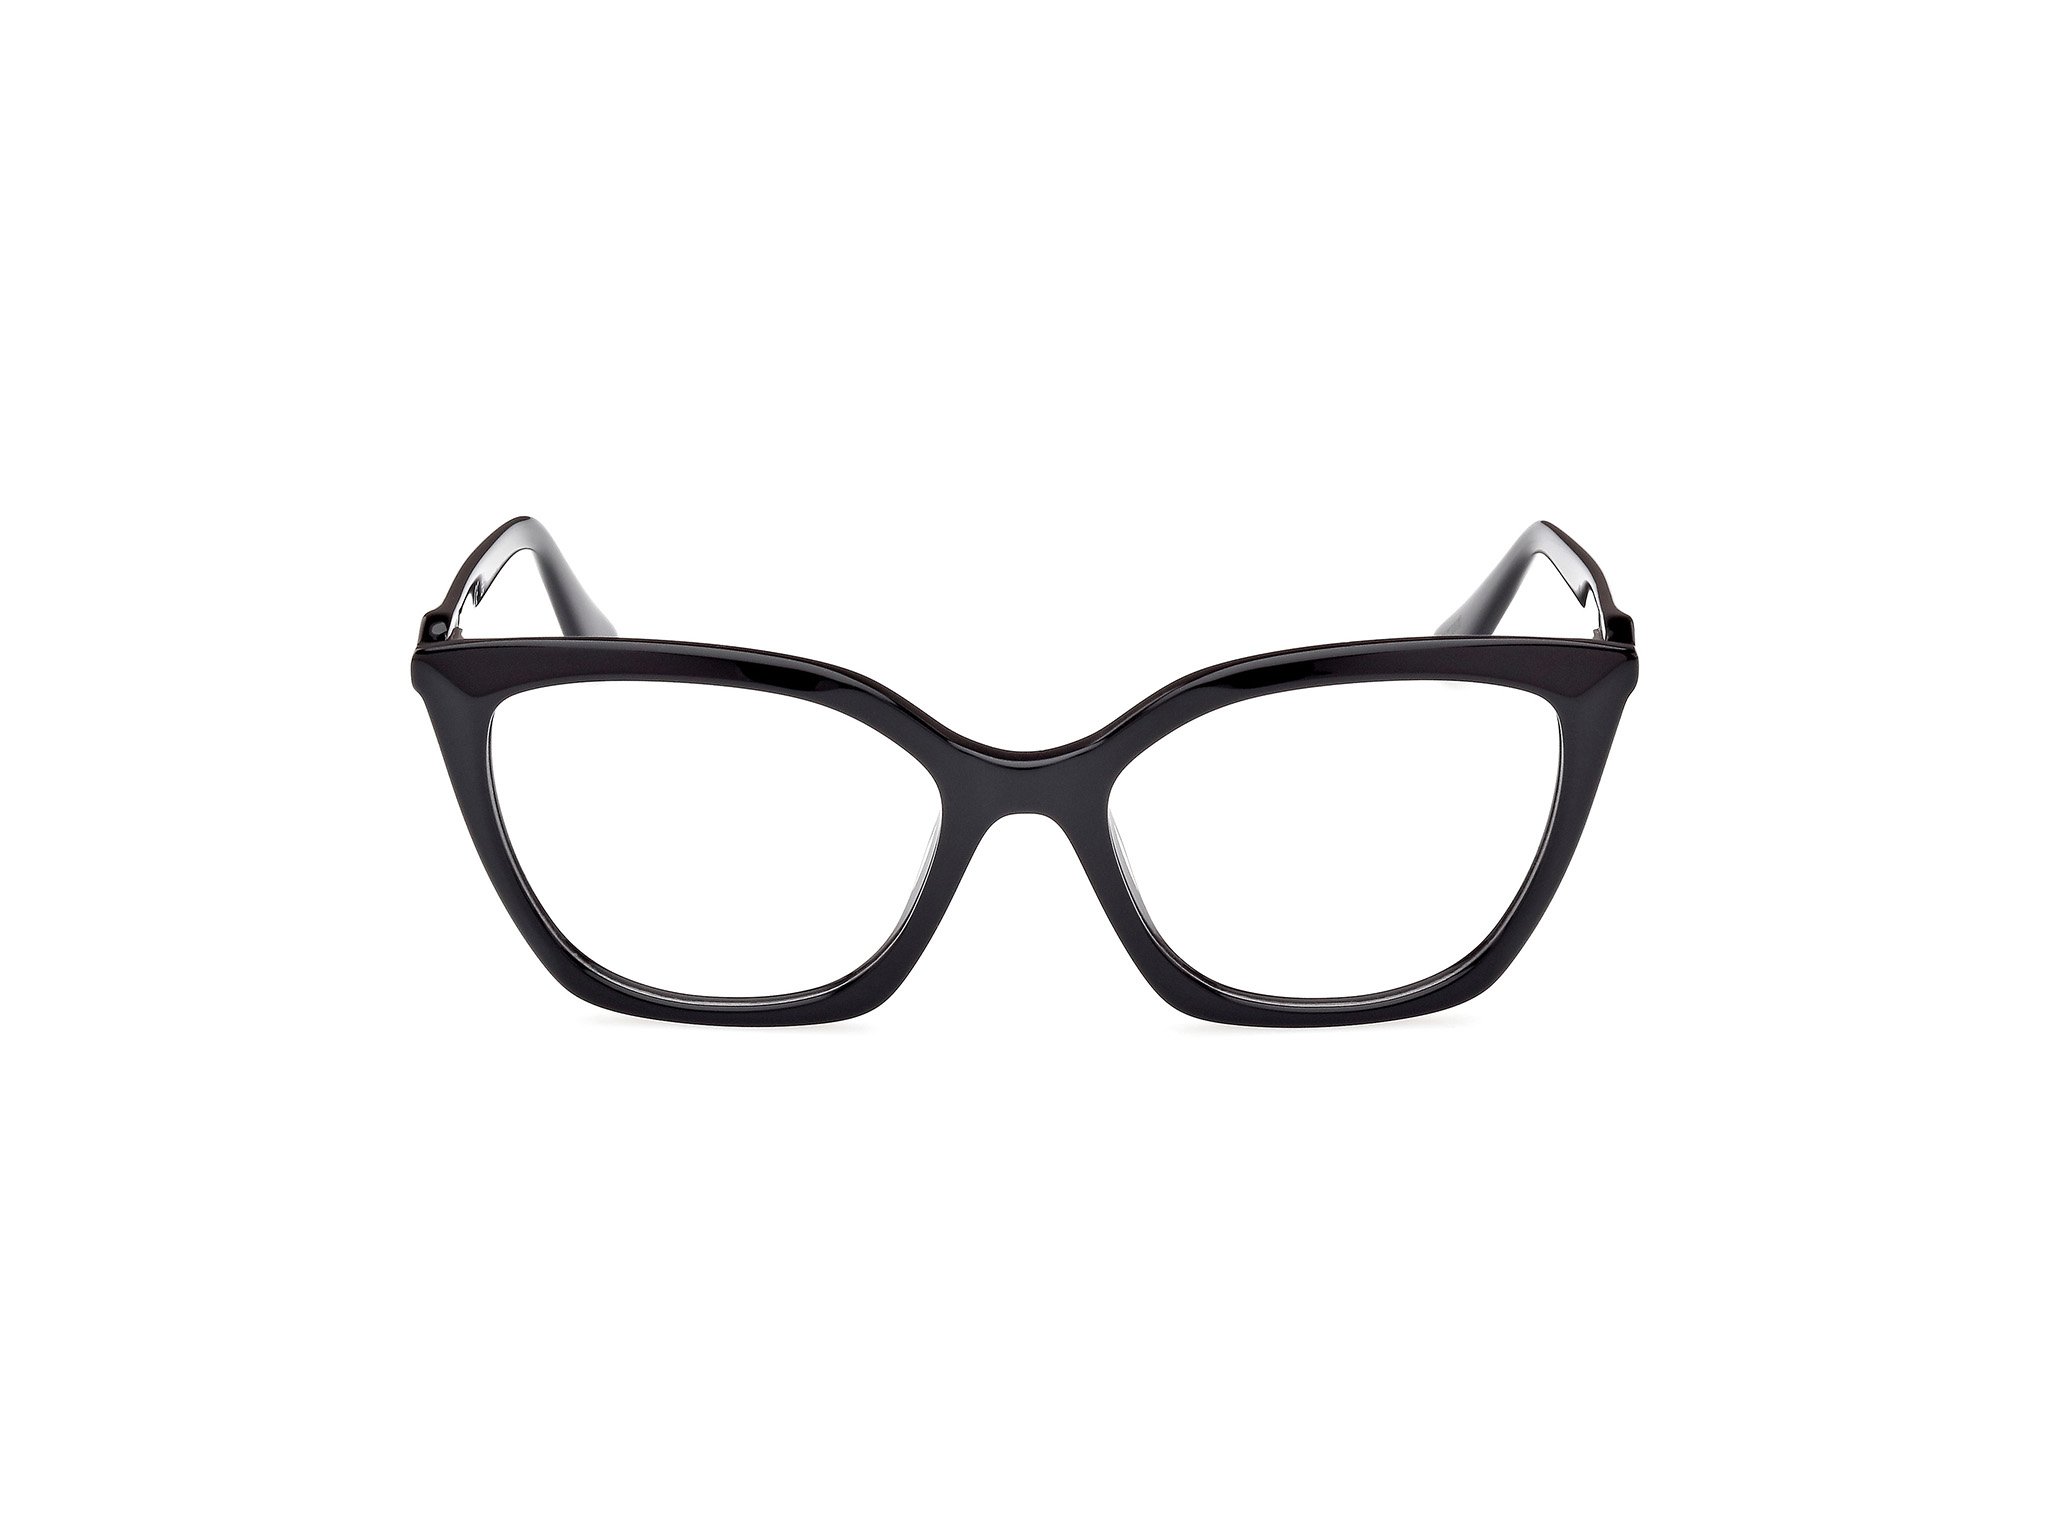 Das Bild zeigt die Korrektionsbrille GU2965 001 von der Marke Guess in schwarz.